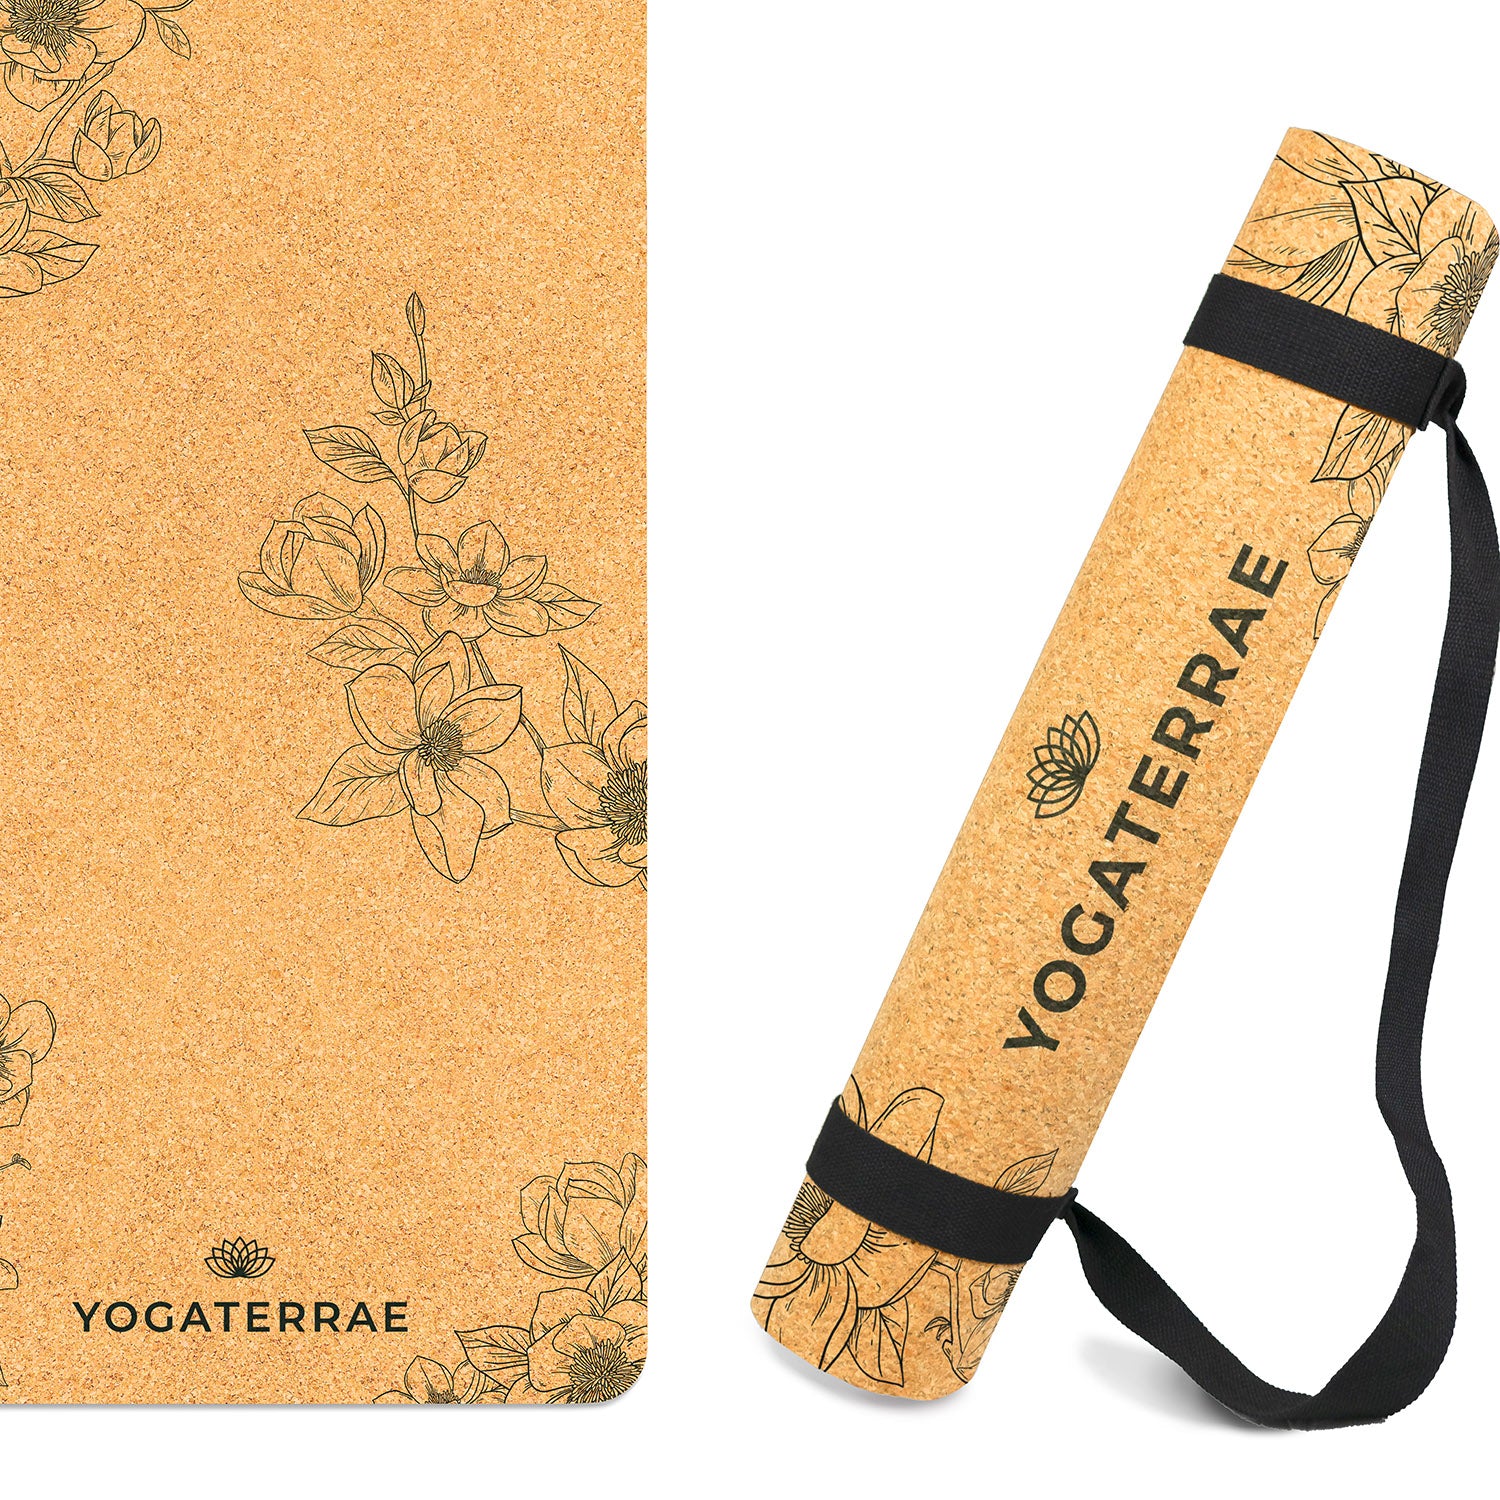 Tapis de yoga liège et caoutchouc naturels antidérapant écologique Magnolias + sangle d'étirements et de transport YOGATERRAE marque française